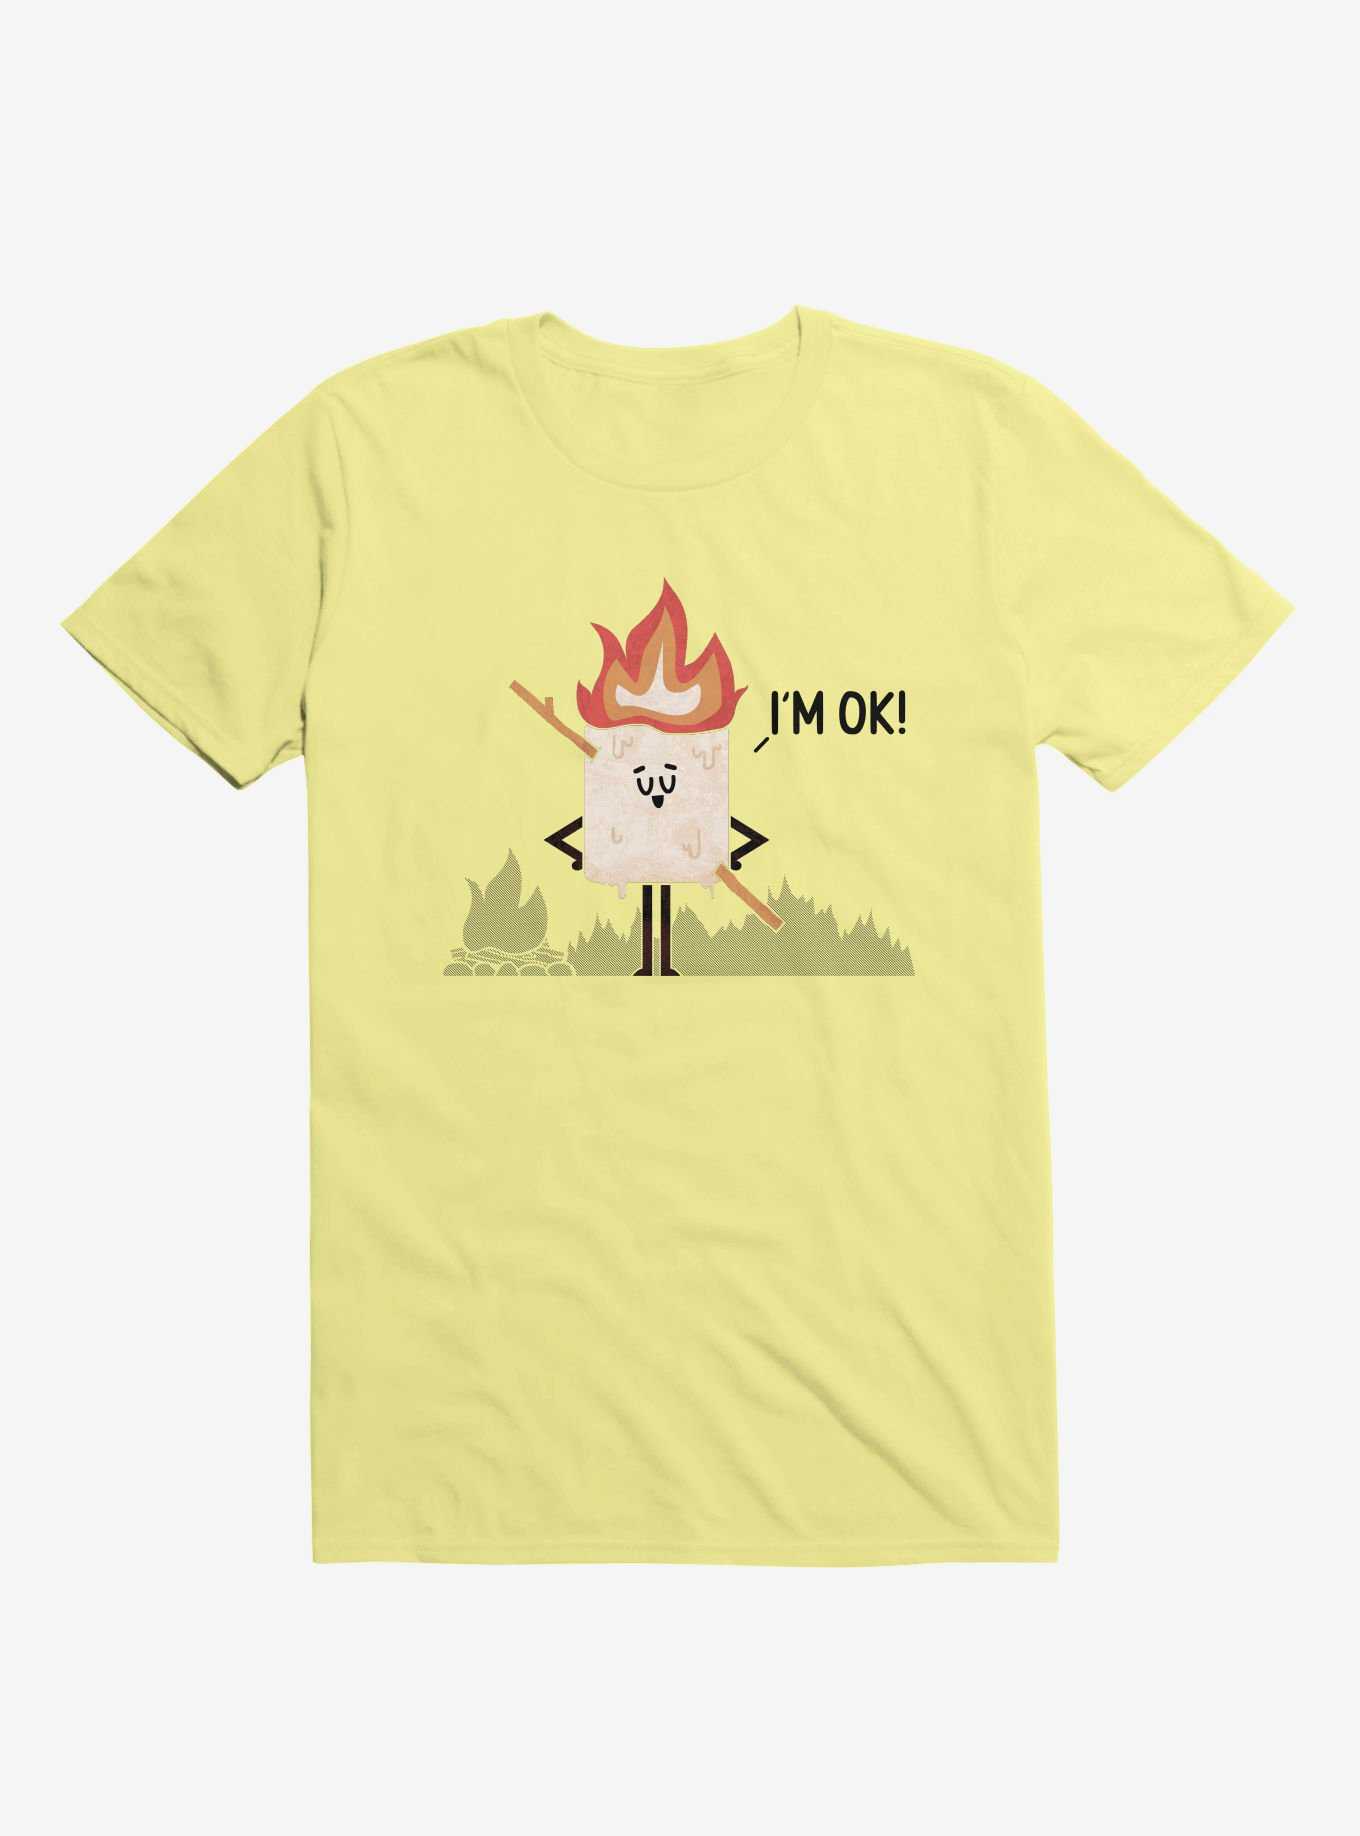 I'm OK! Campfire S'more Corn Silk Yellow T-Shirt, , hi-res